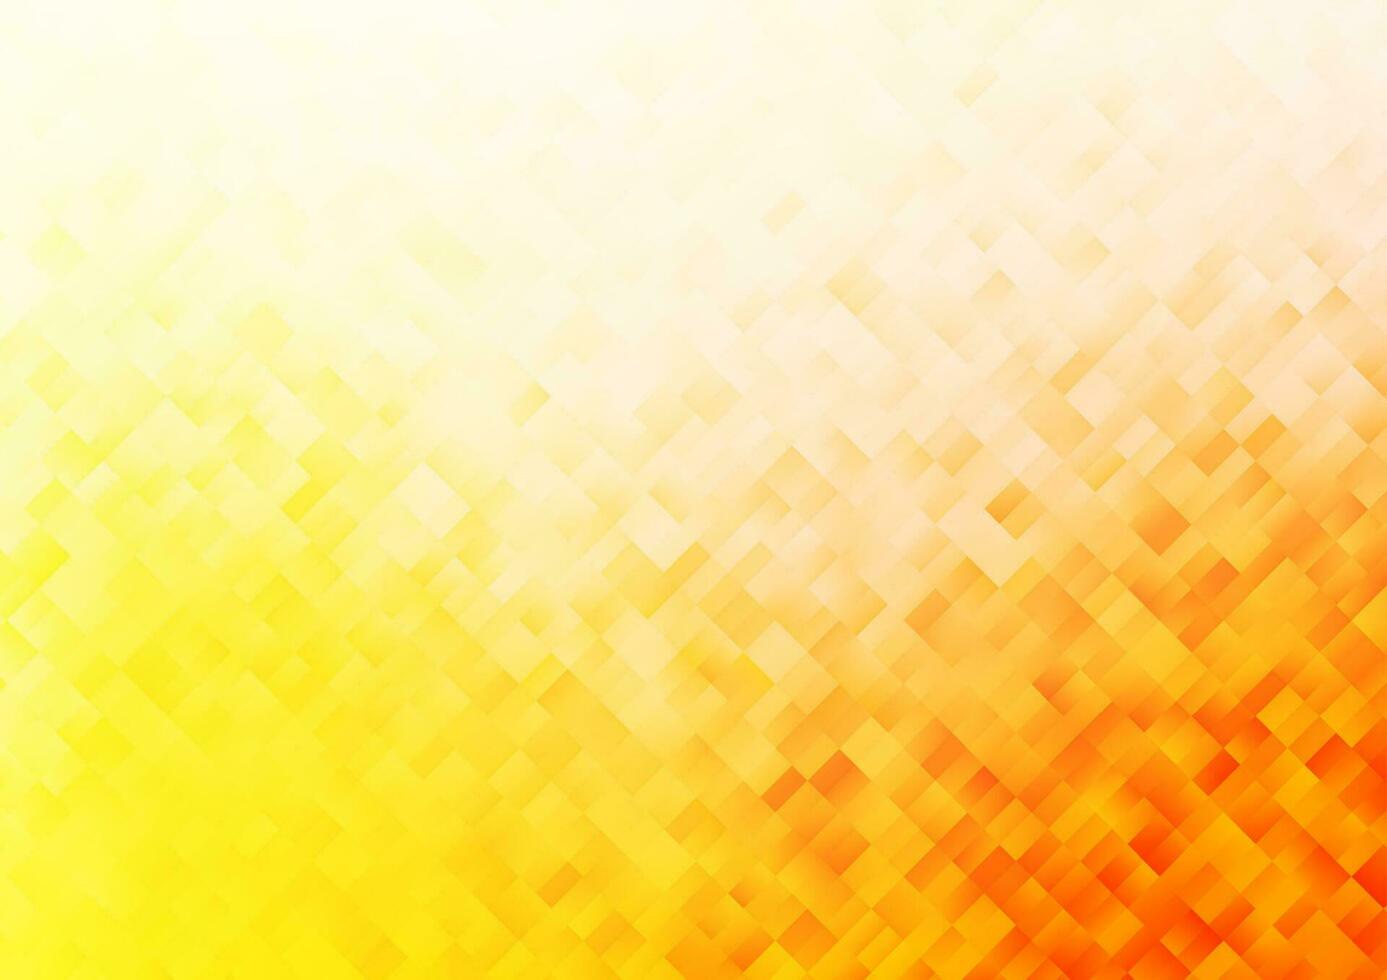 couverture de vecteur jaune clair, orange dans un style polygonal.